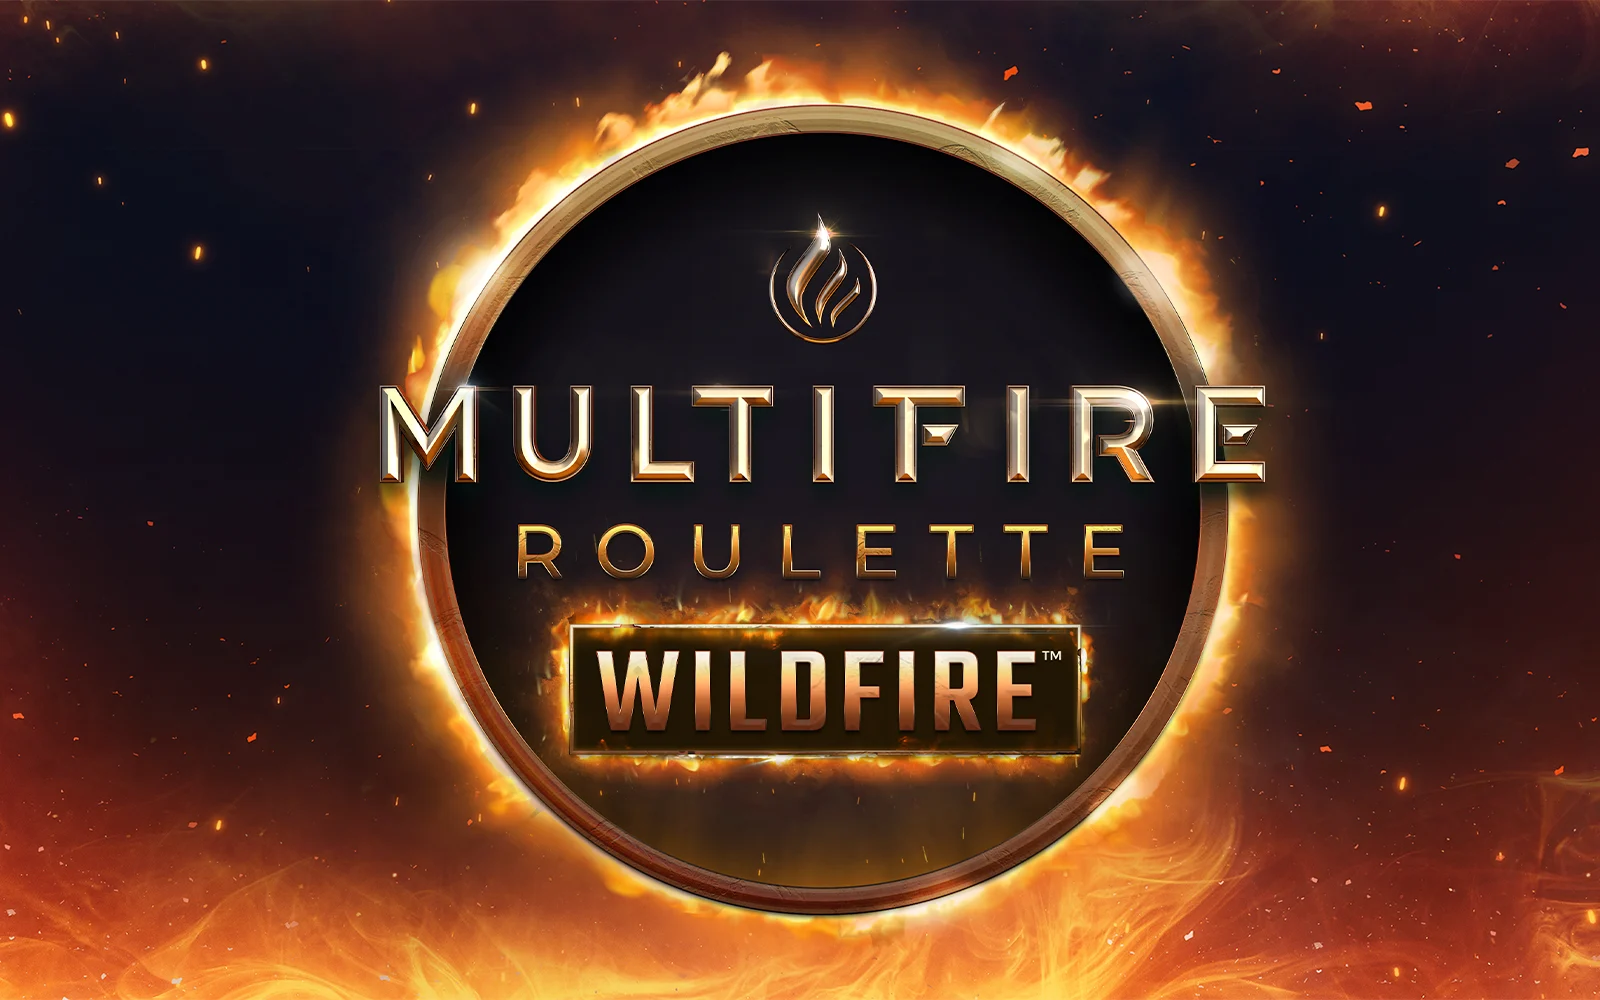 Spielen Sie Multifire Roulette Wildfire™ auf Starcasino.be-Online-Casino